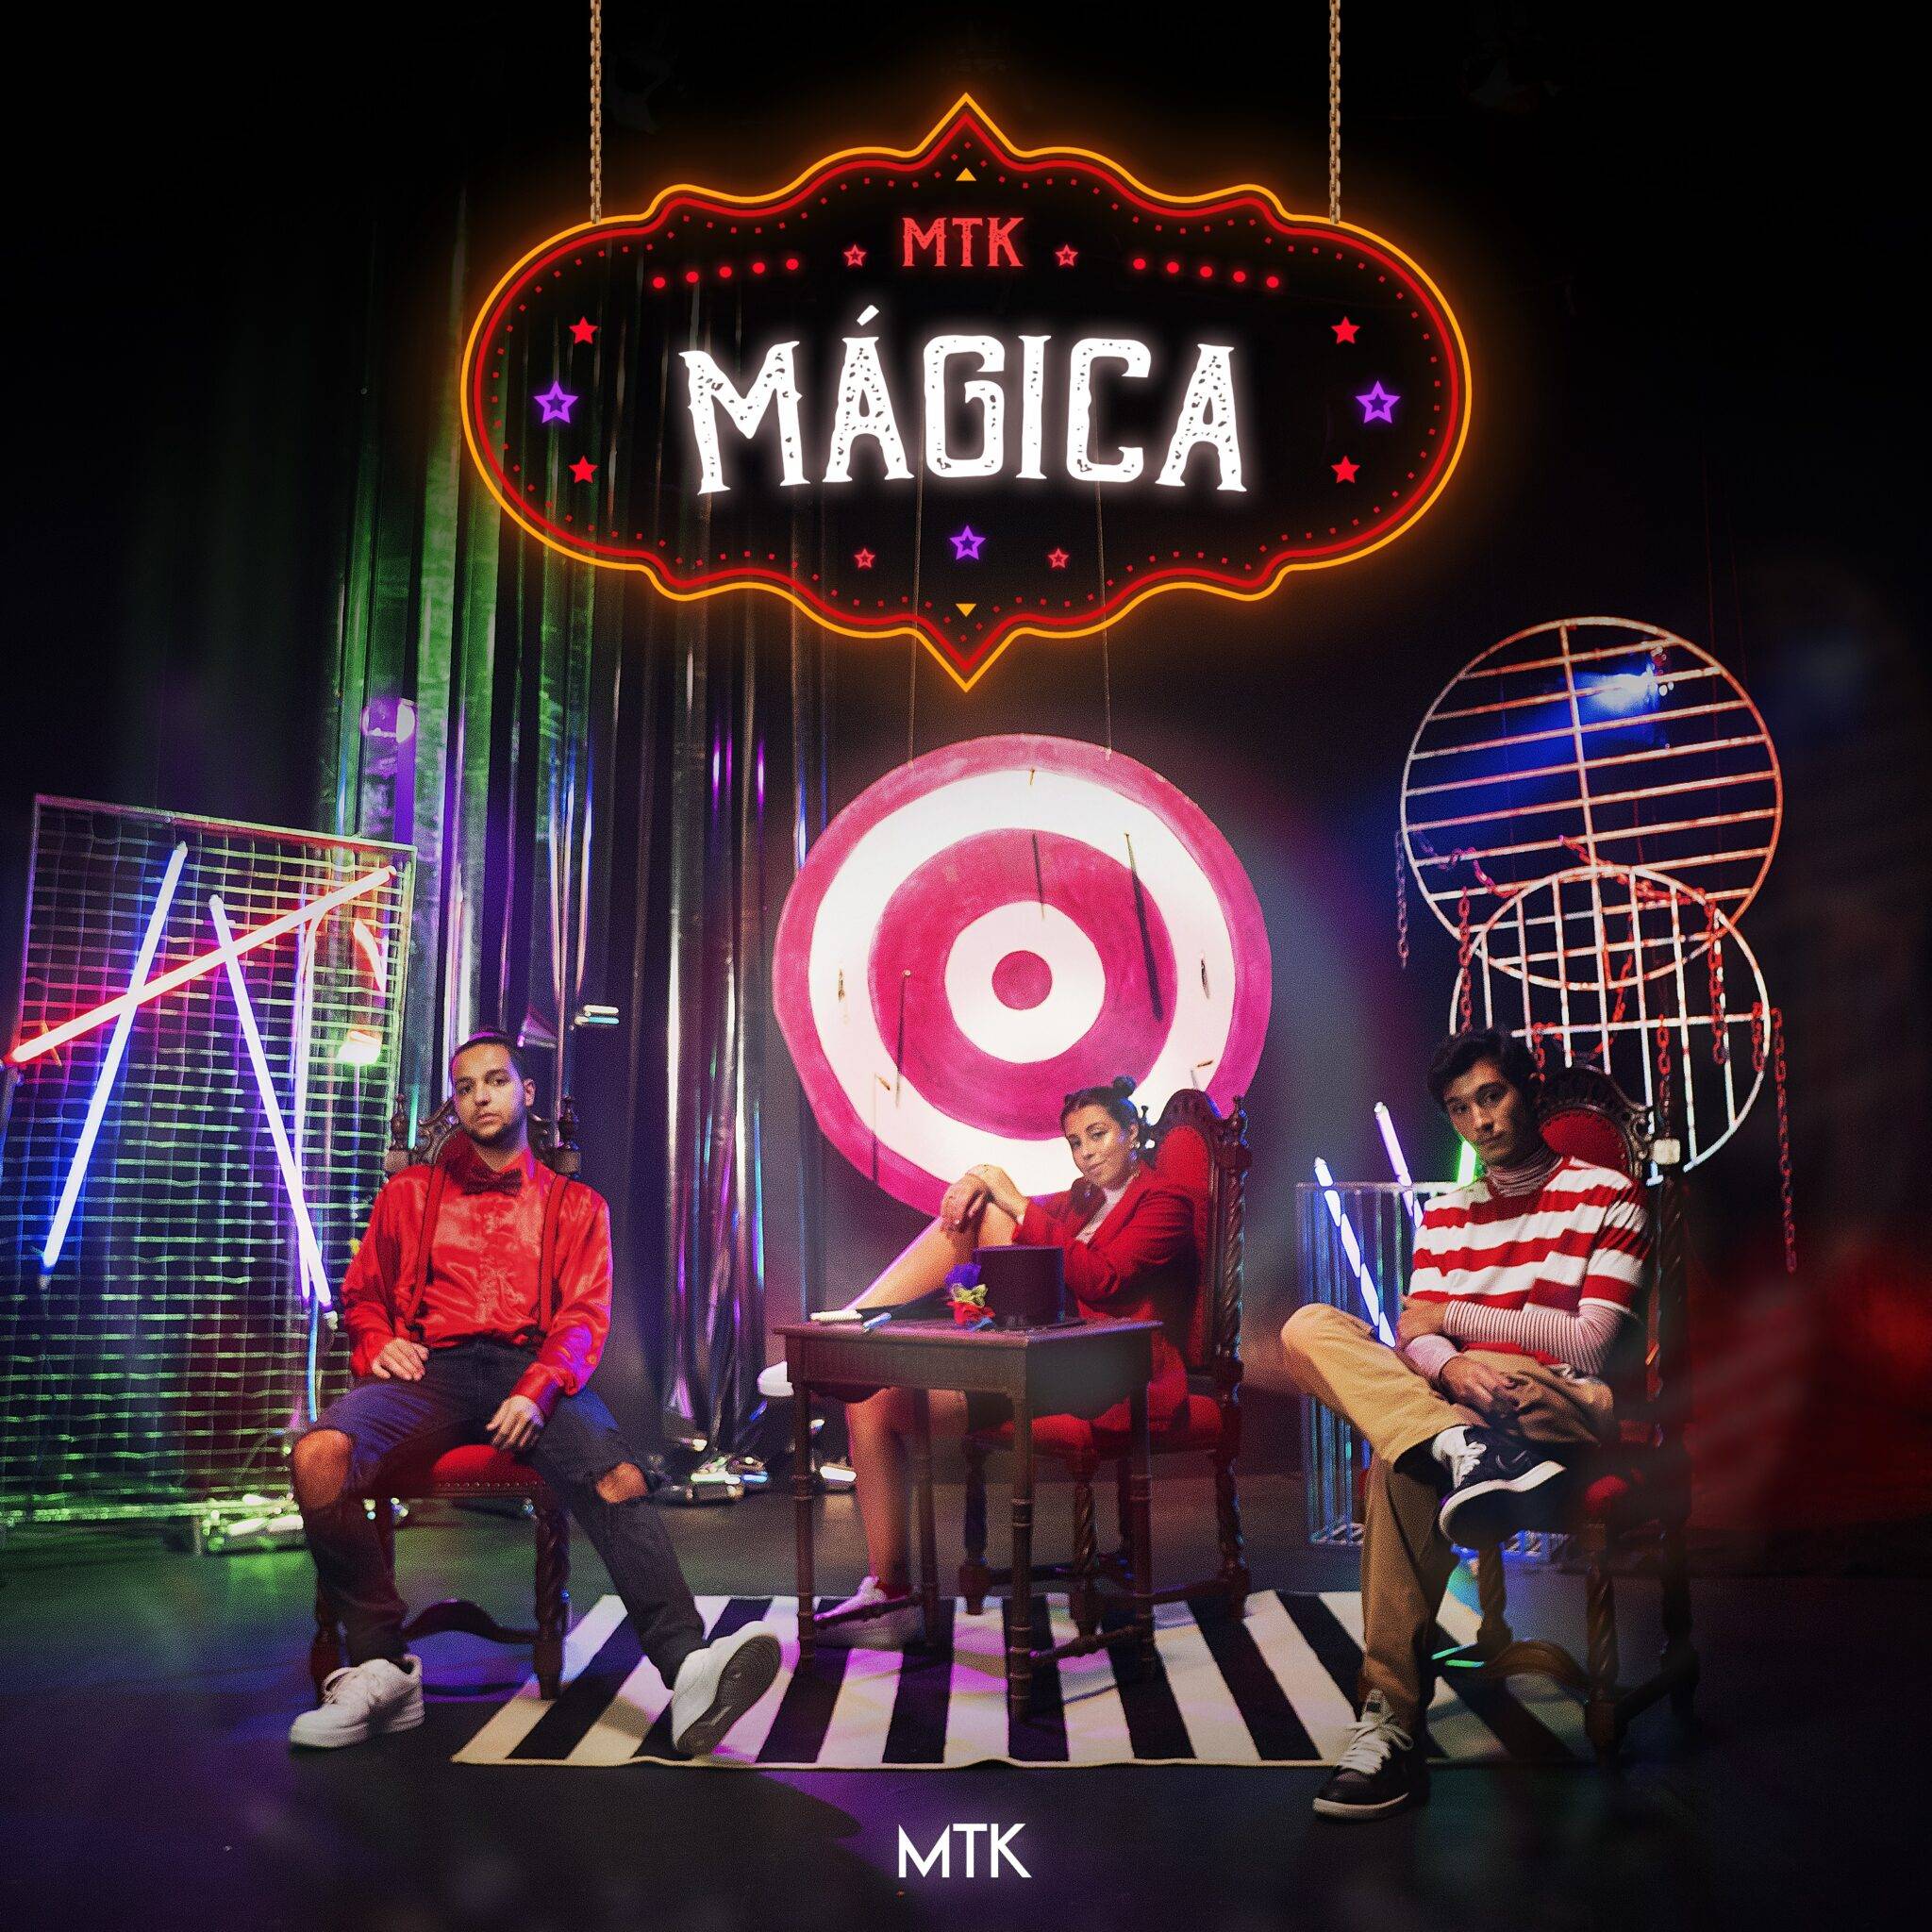 Capa de "Mágica", novo single do MTK. Foto: Divulgação